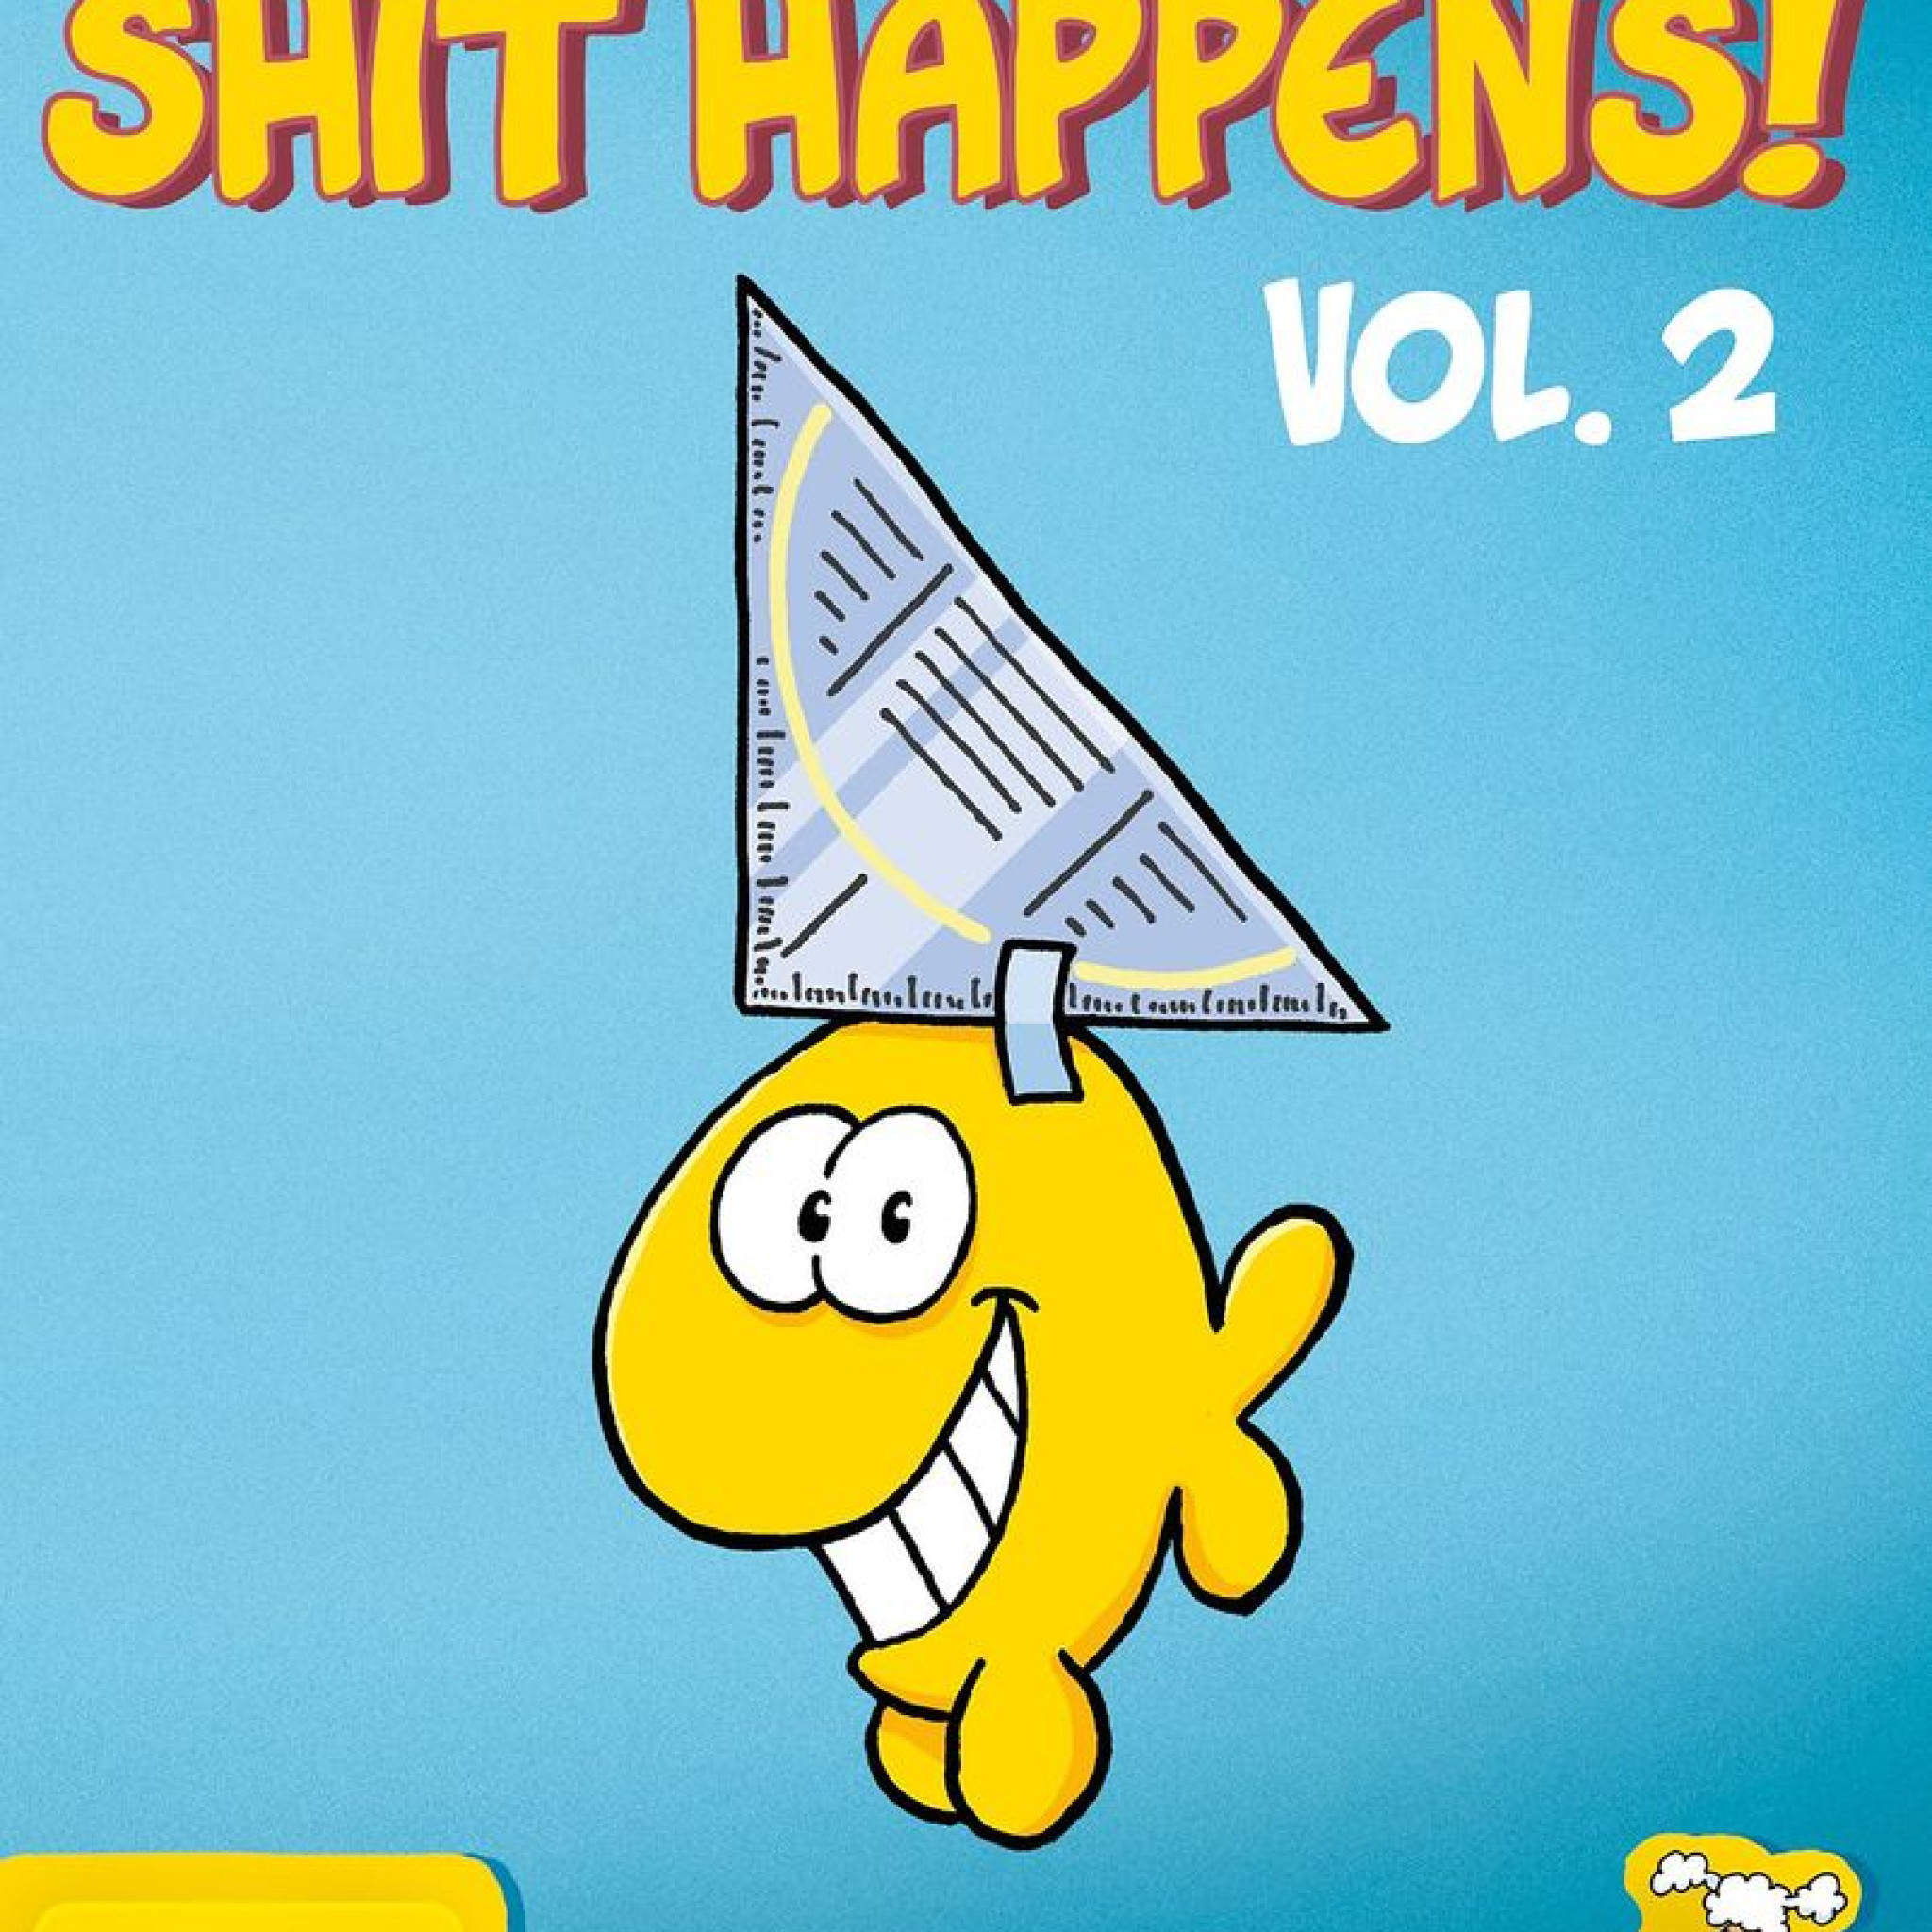 Shit happens! Vol. 2